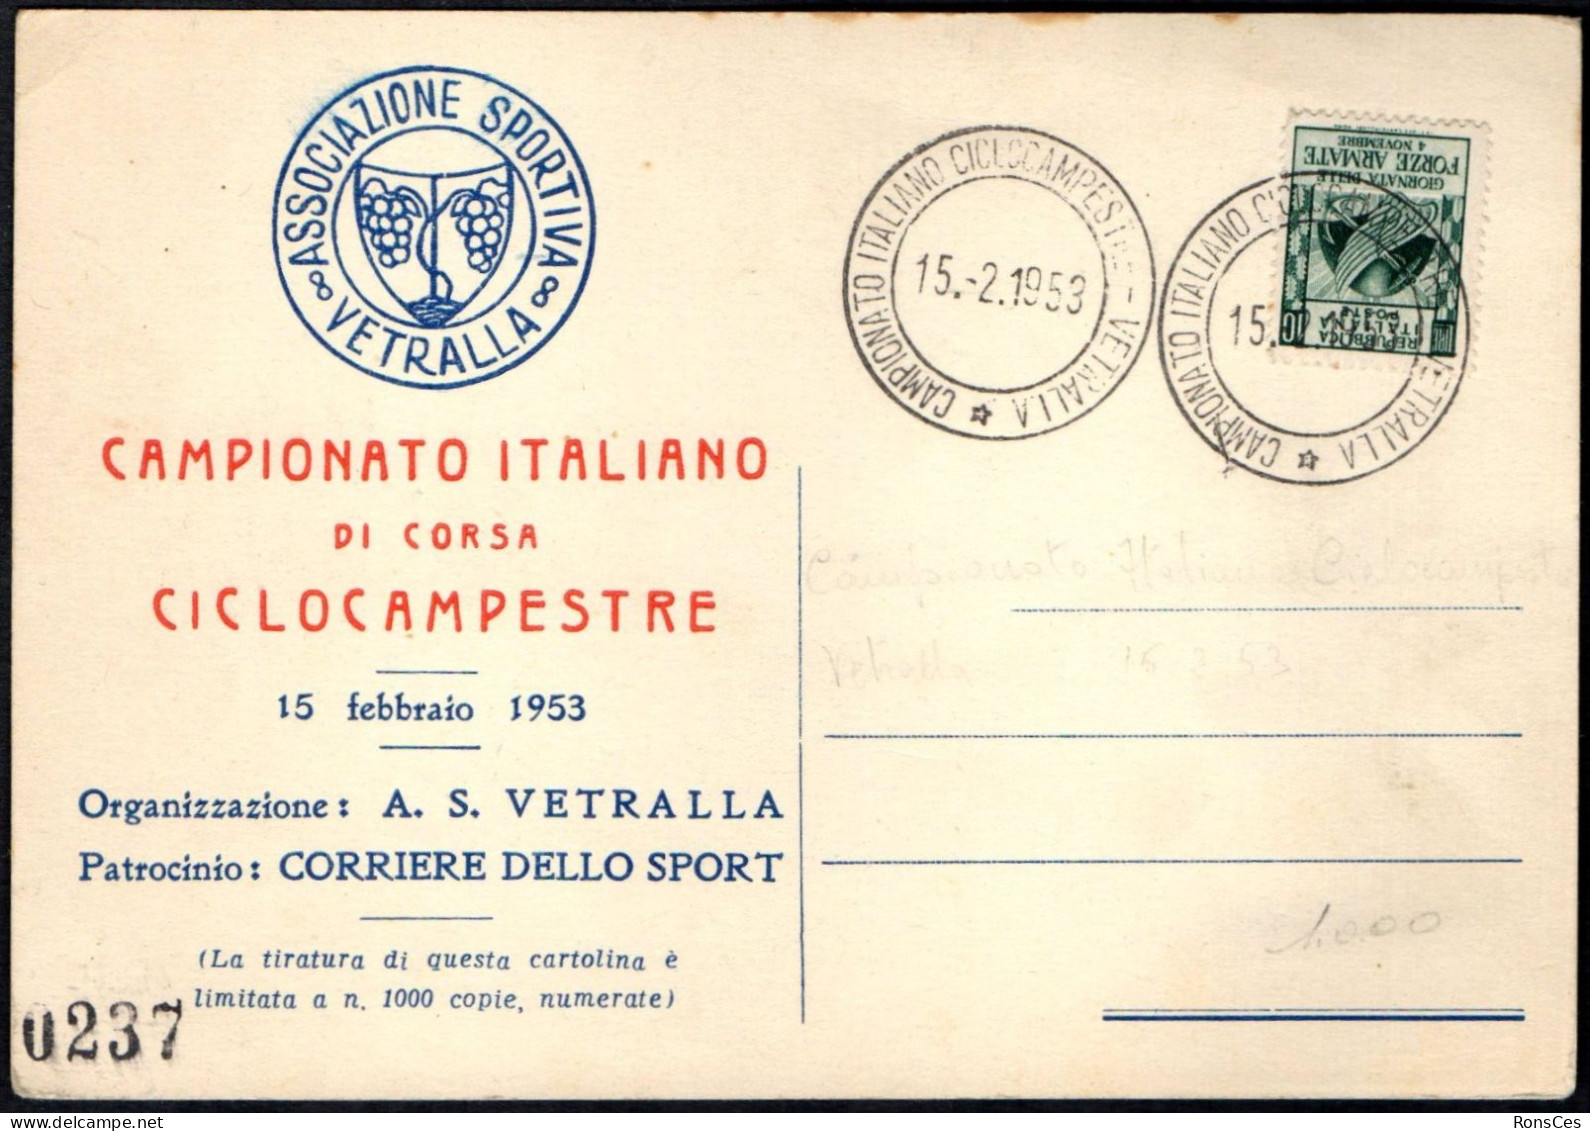 CYCLING - ITALIA VETRALLA 1953 - CAMPIONATO ITALIANO DI CORSA CICLOCAMPESTRE - A - Cycling